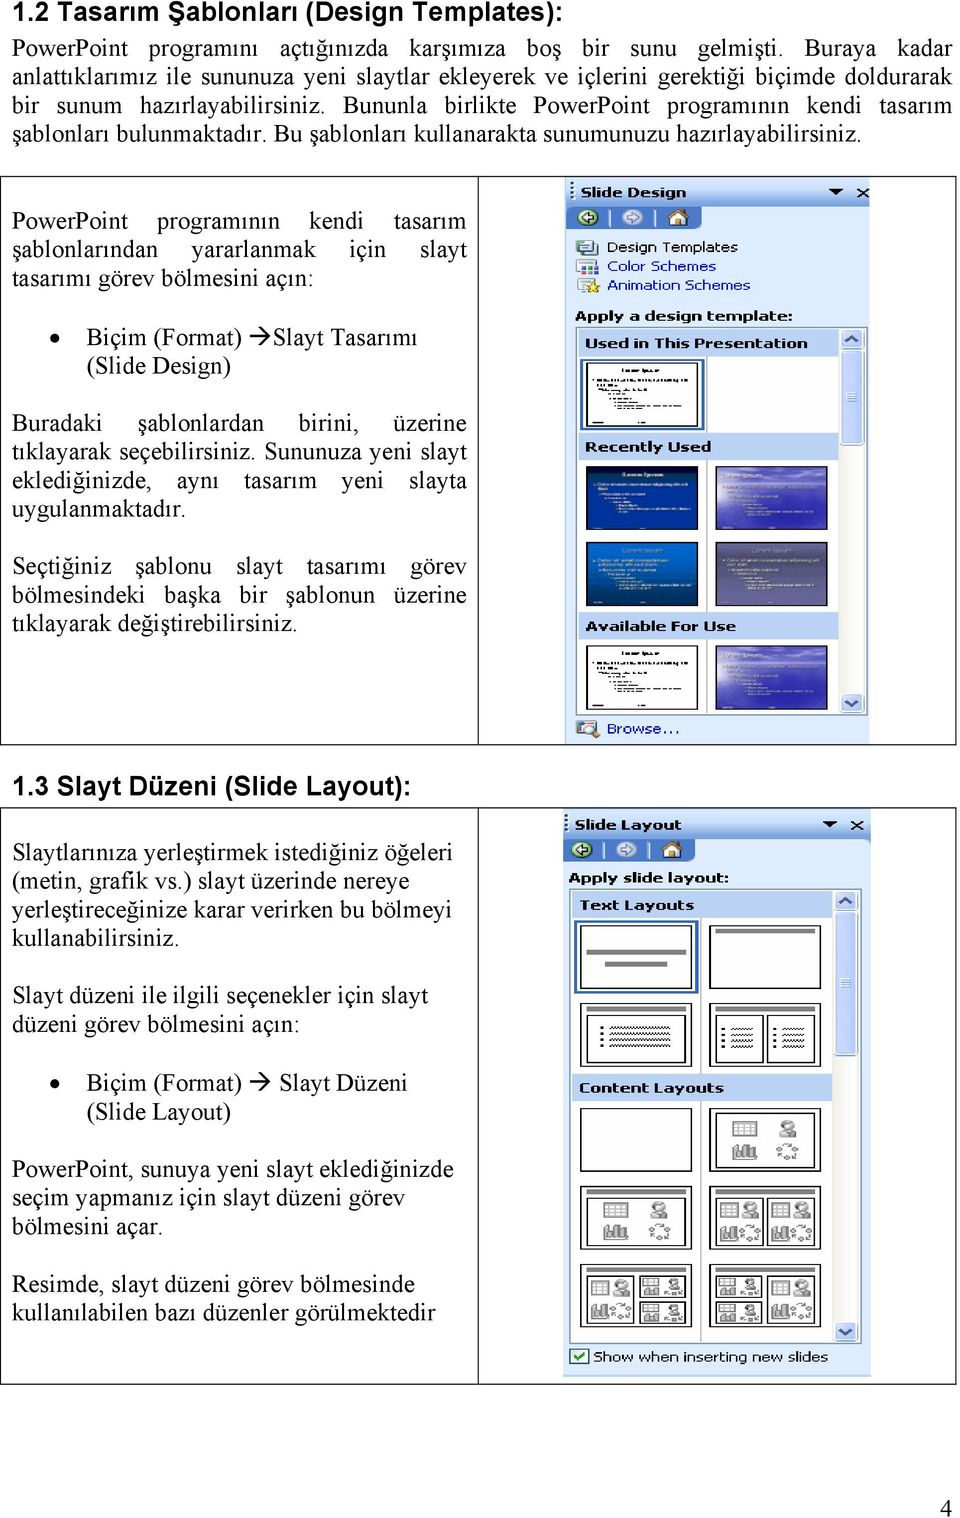 Bununla birlikte PowerPoint programının kendi tasarım şablonları bulunmaktadır. Bu şablonları kullanarakta sunumunuzu hazırlayabilirsiniz.